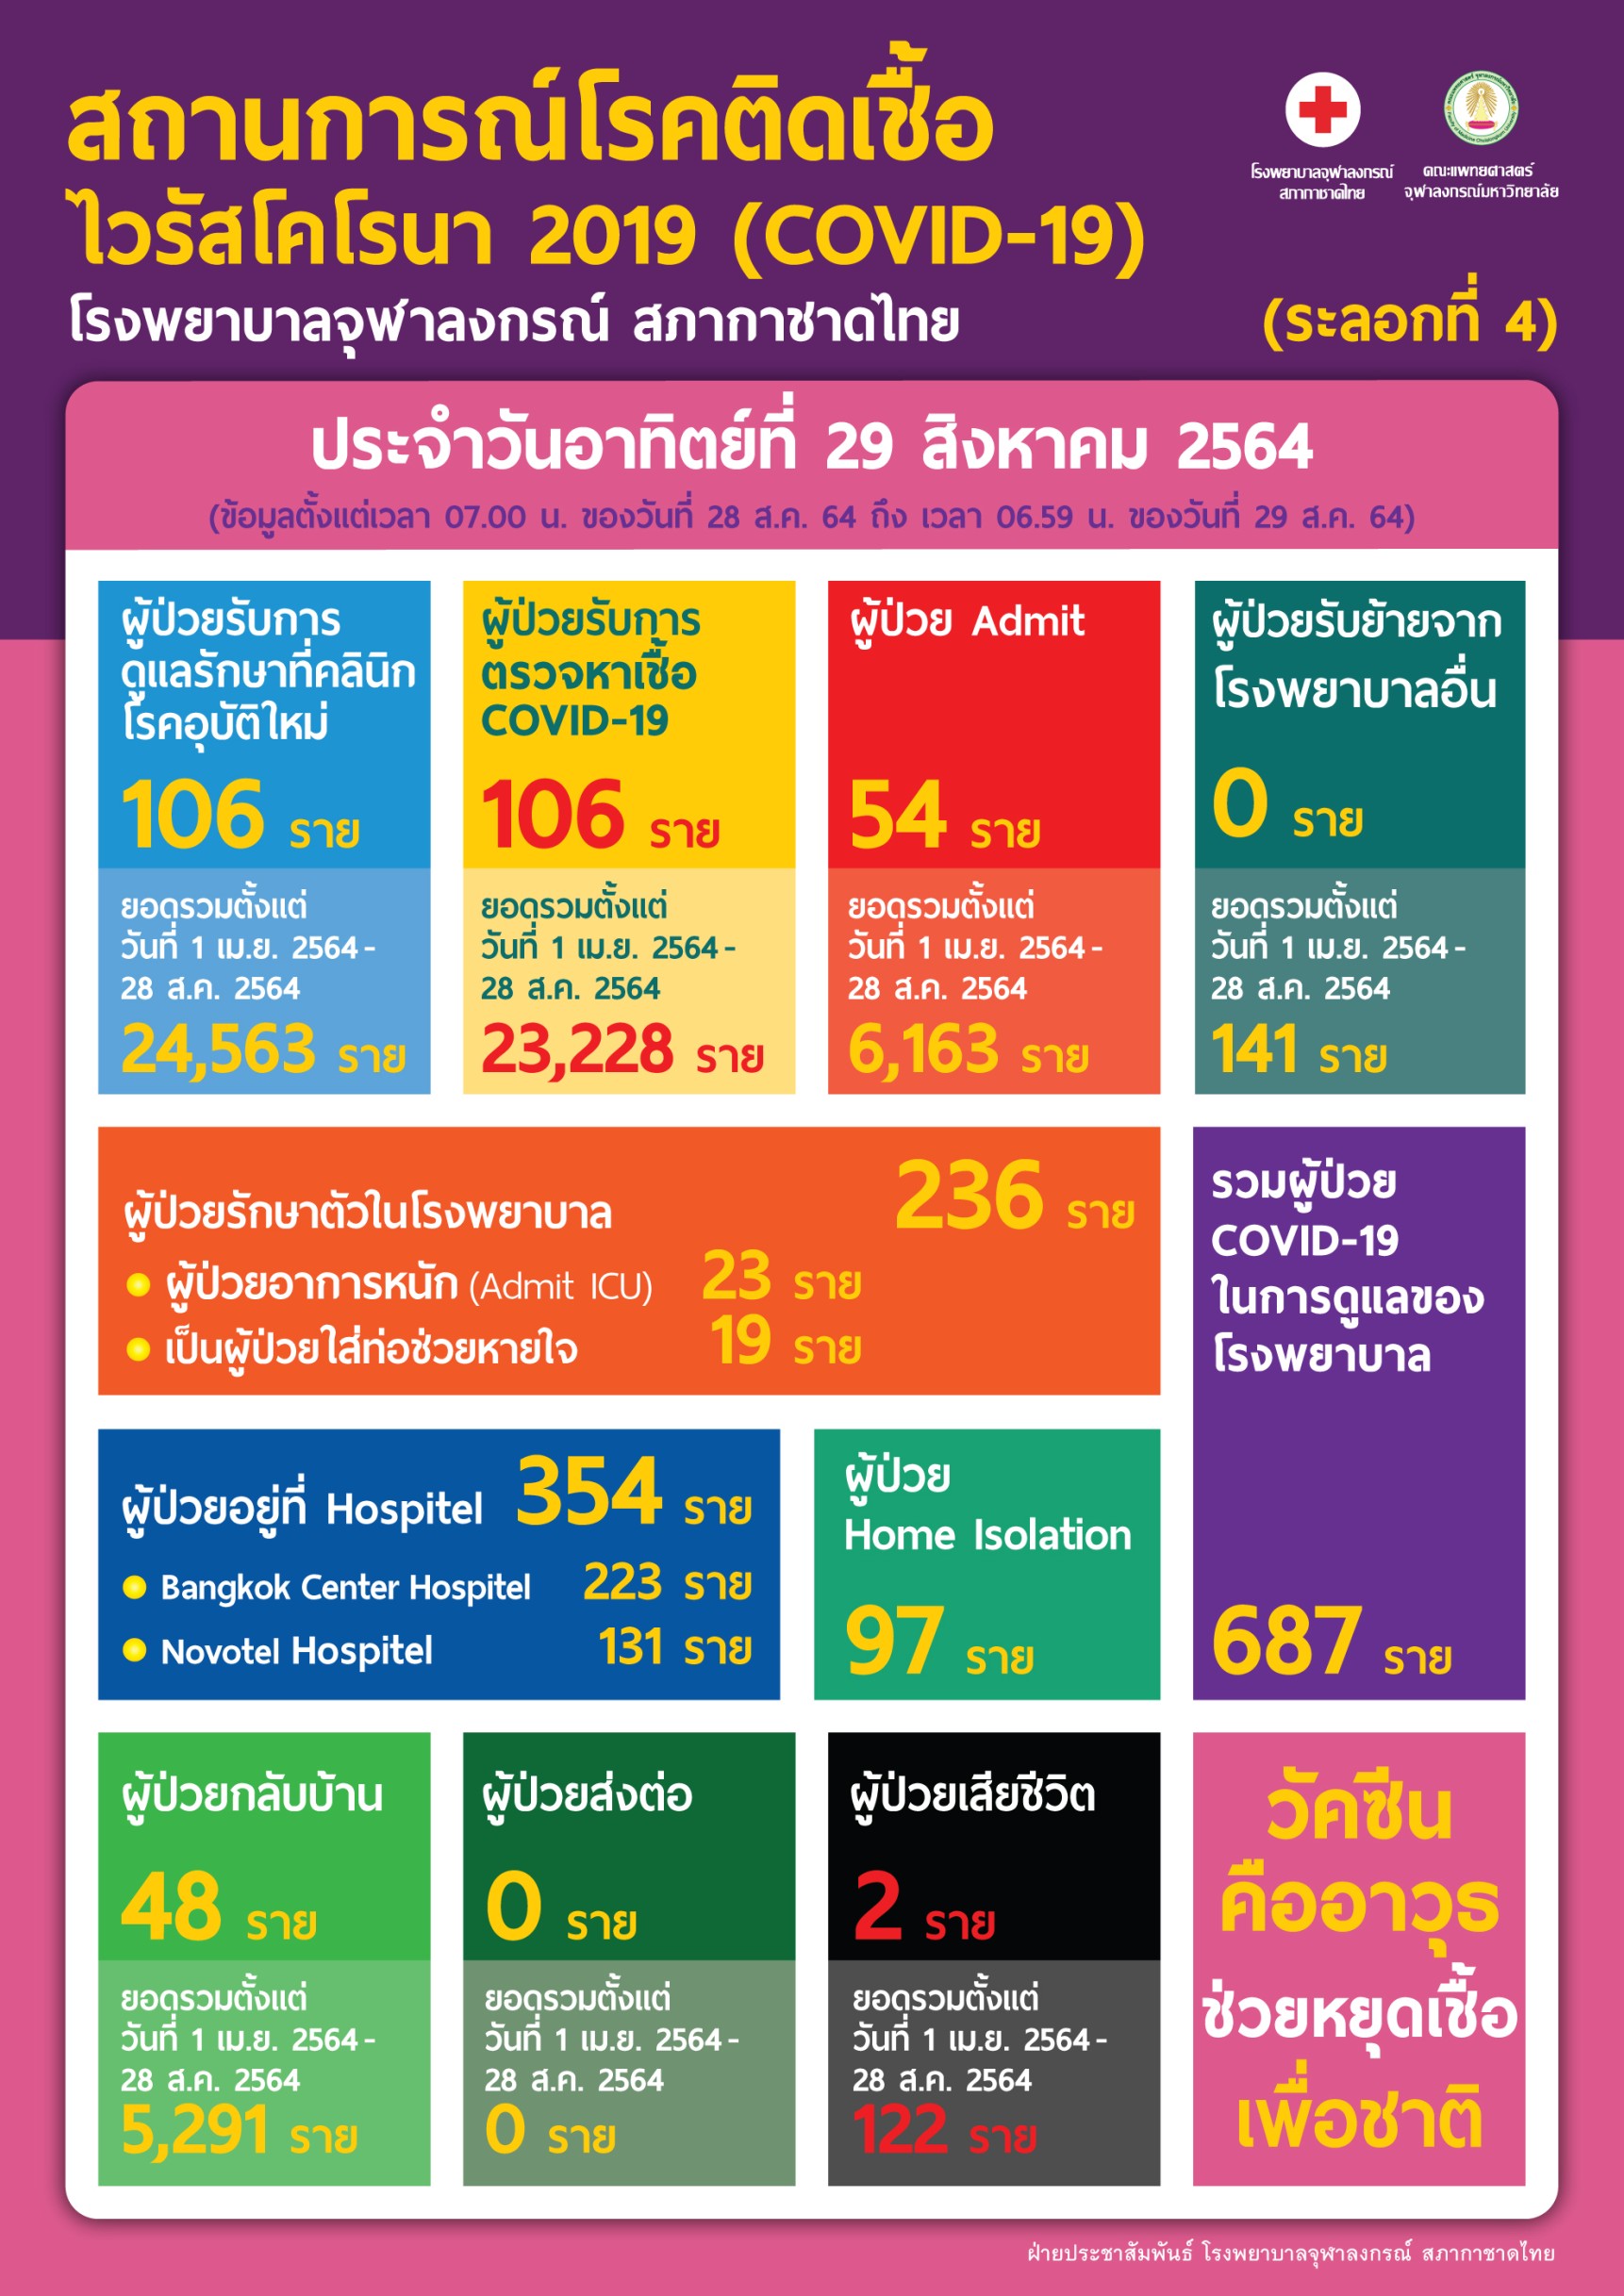 สถานการณ์โรคติดเชื้อไวรัสโคโรนา 2019 (COVID-19) (ระลอกที่ 4) โรงพยาบาลจุฬาลงกรณ์ สภากาชาดไทย ประจำวันอาทิตย์ที่ 29 สิงหาคม 2564